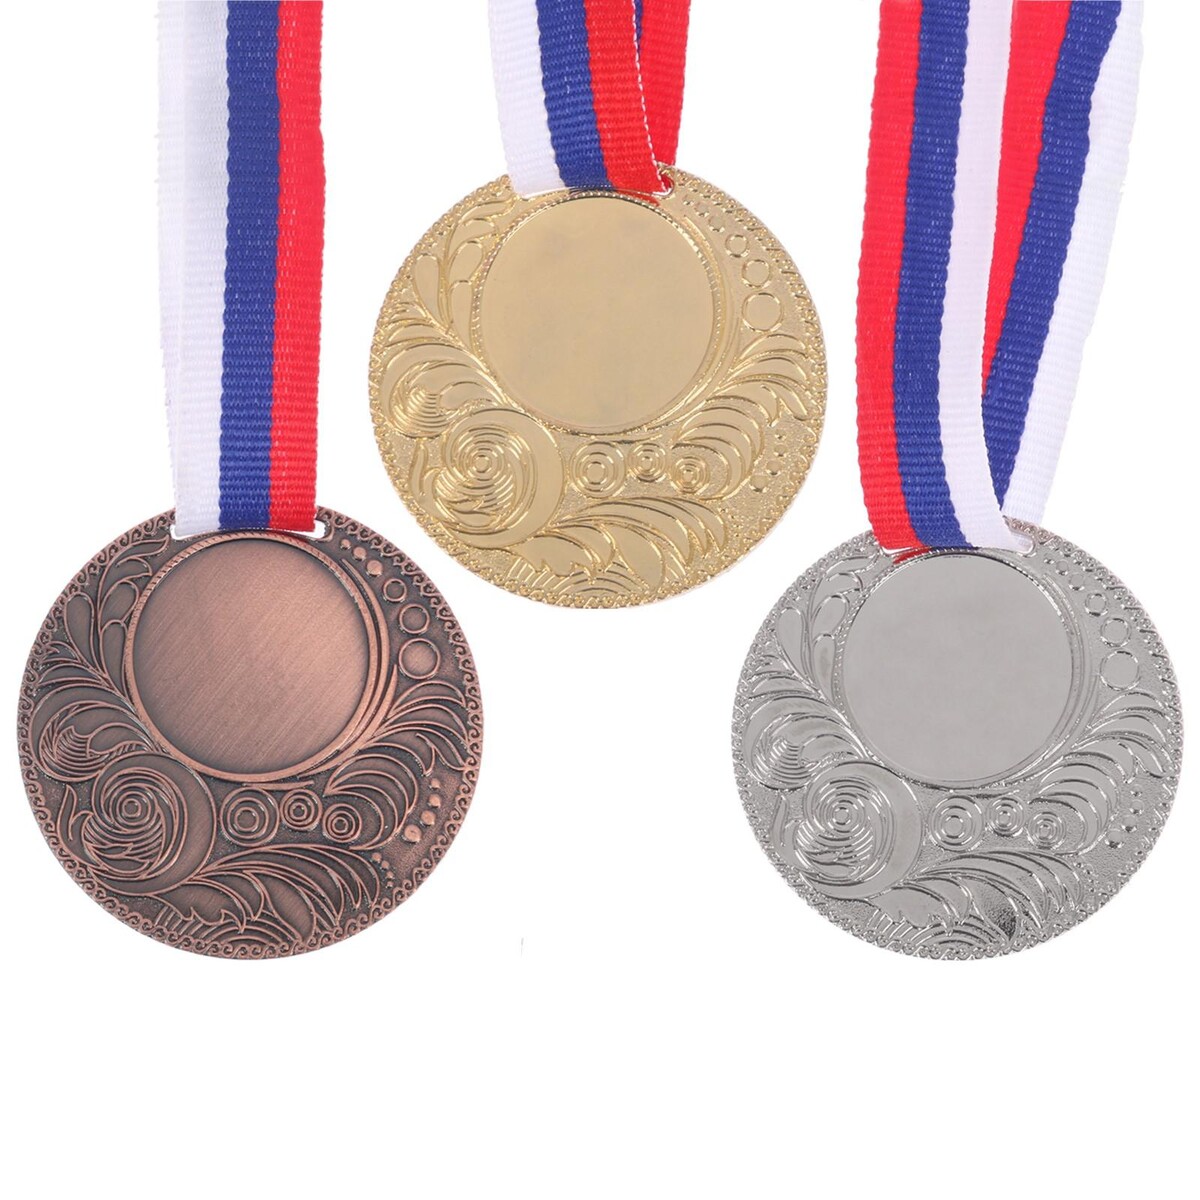 Медаль под нанесение 062 диам 5 см. цвет бронз. с лентой медаль под нанесение 067 диам 5 см триколор бронз с лентой